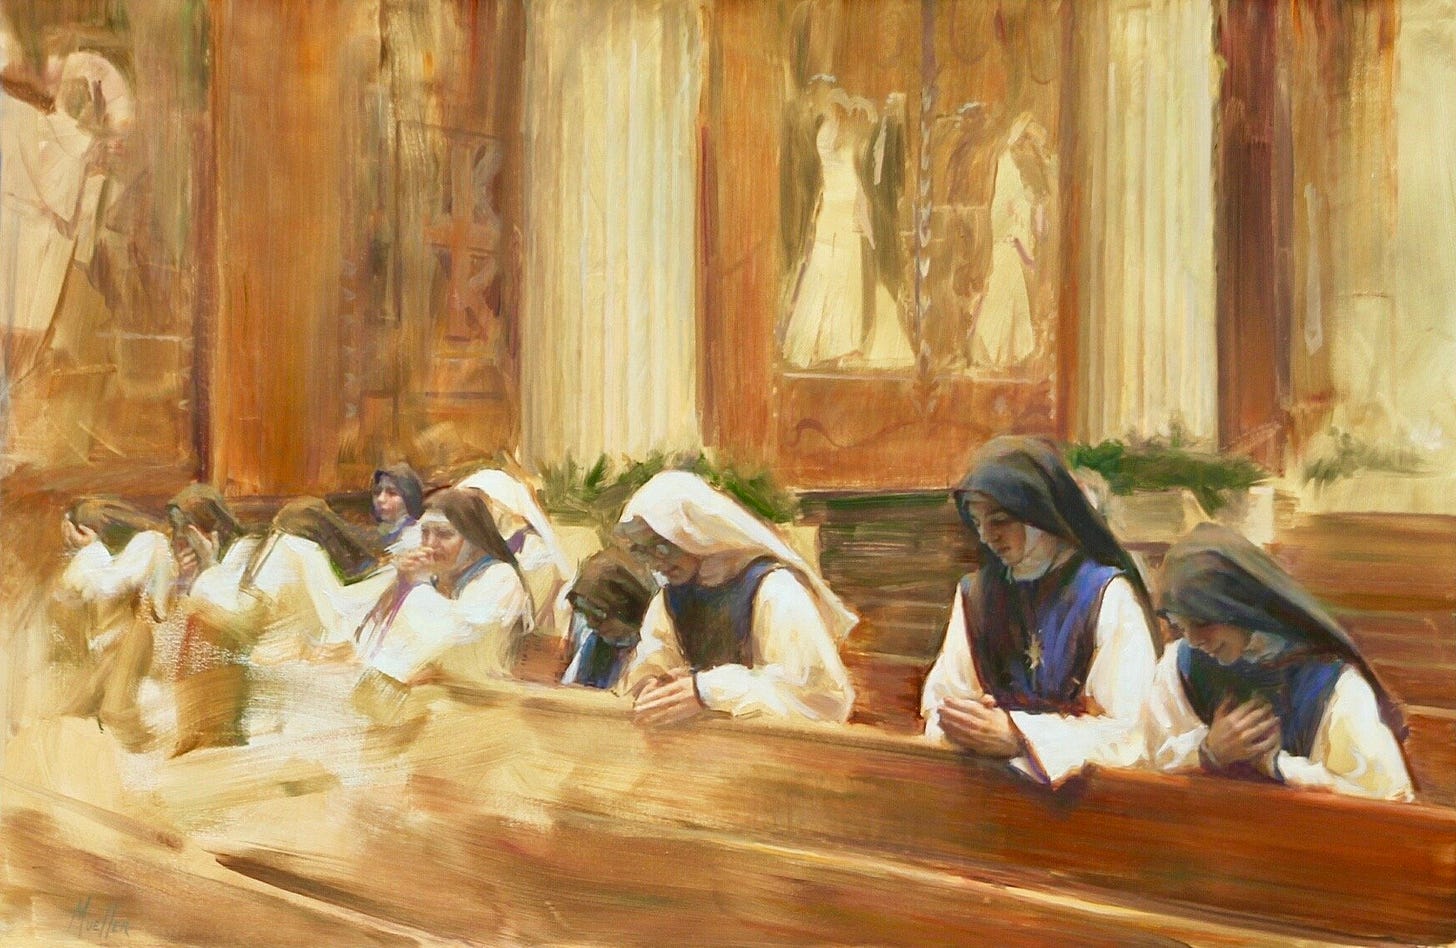 Luke 11: 1-4 (2019) | CHRISTIAN ART | Gospel Reading & Art Reflection